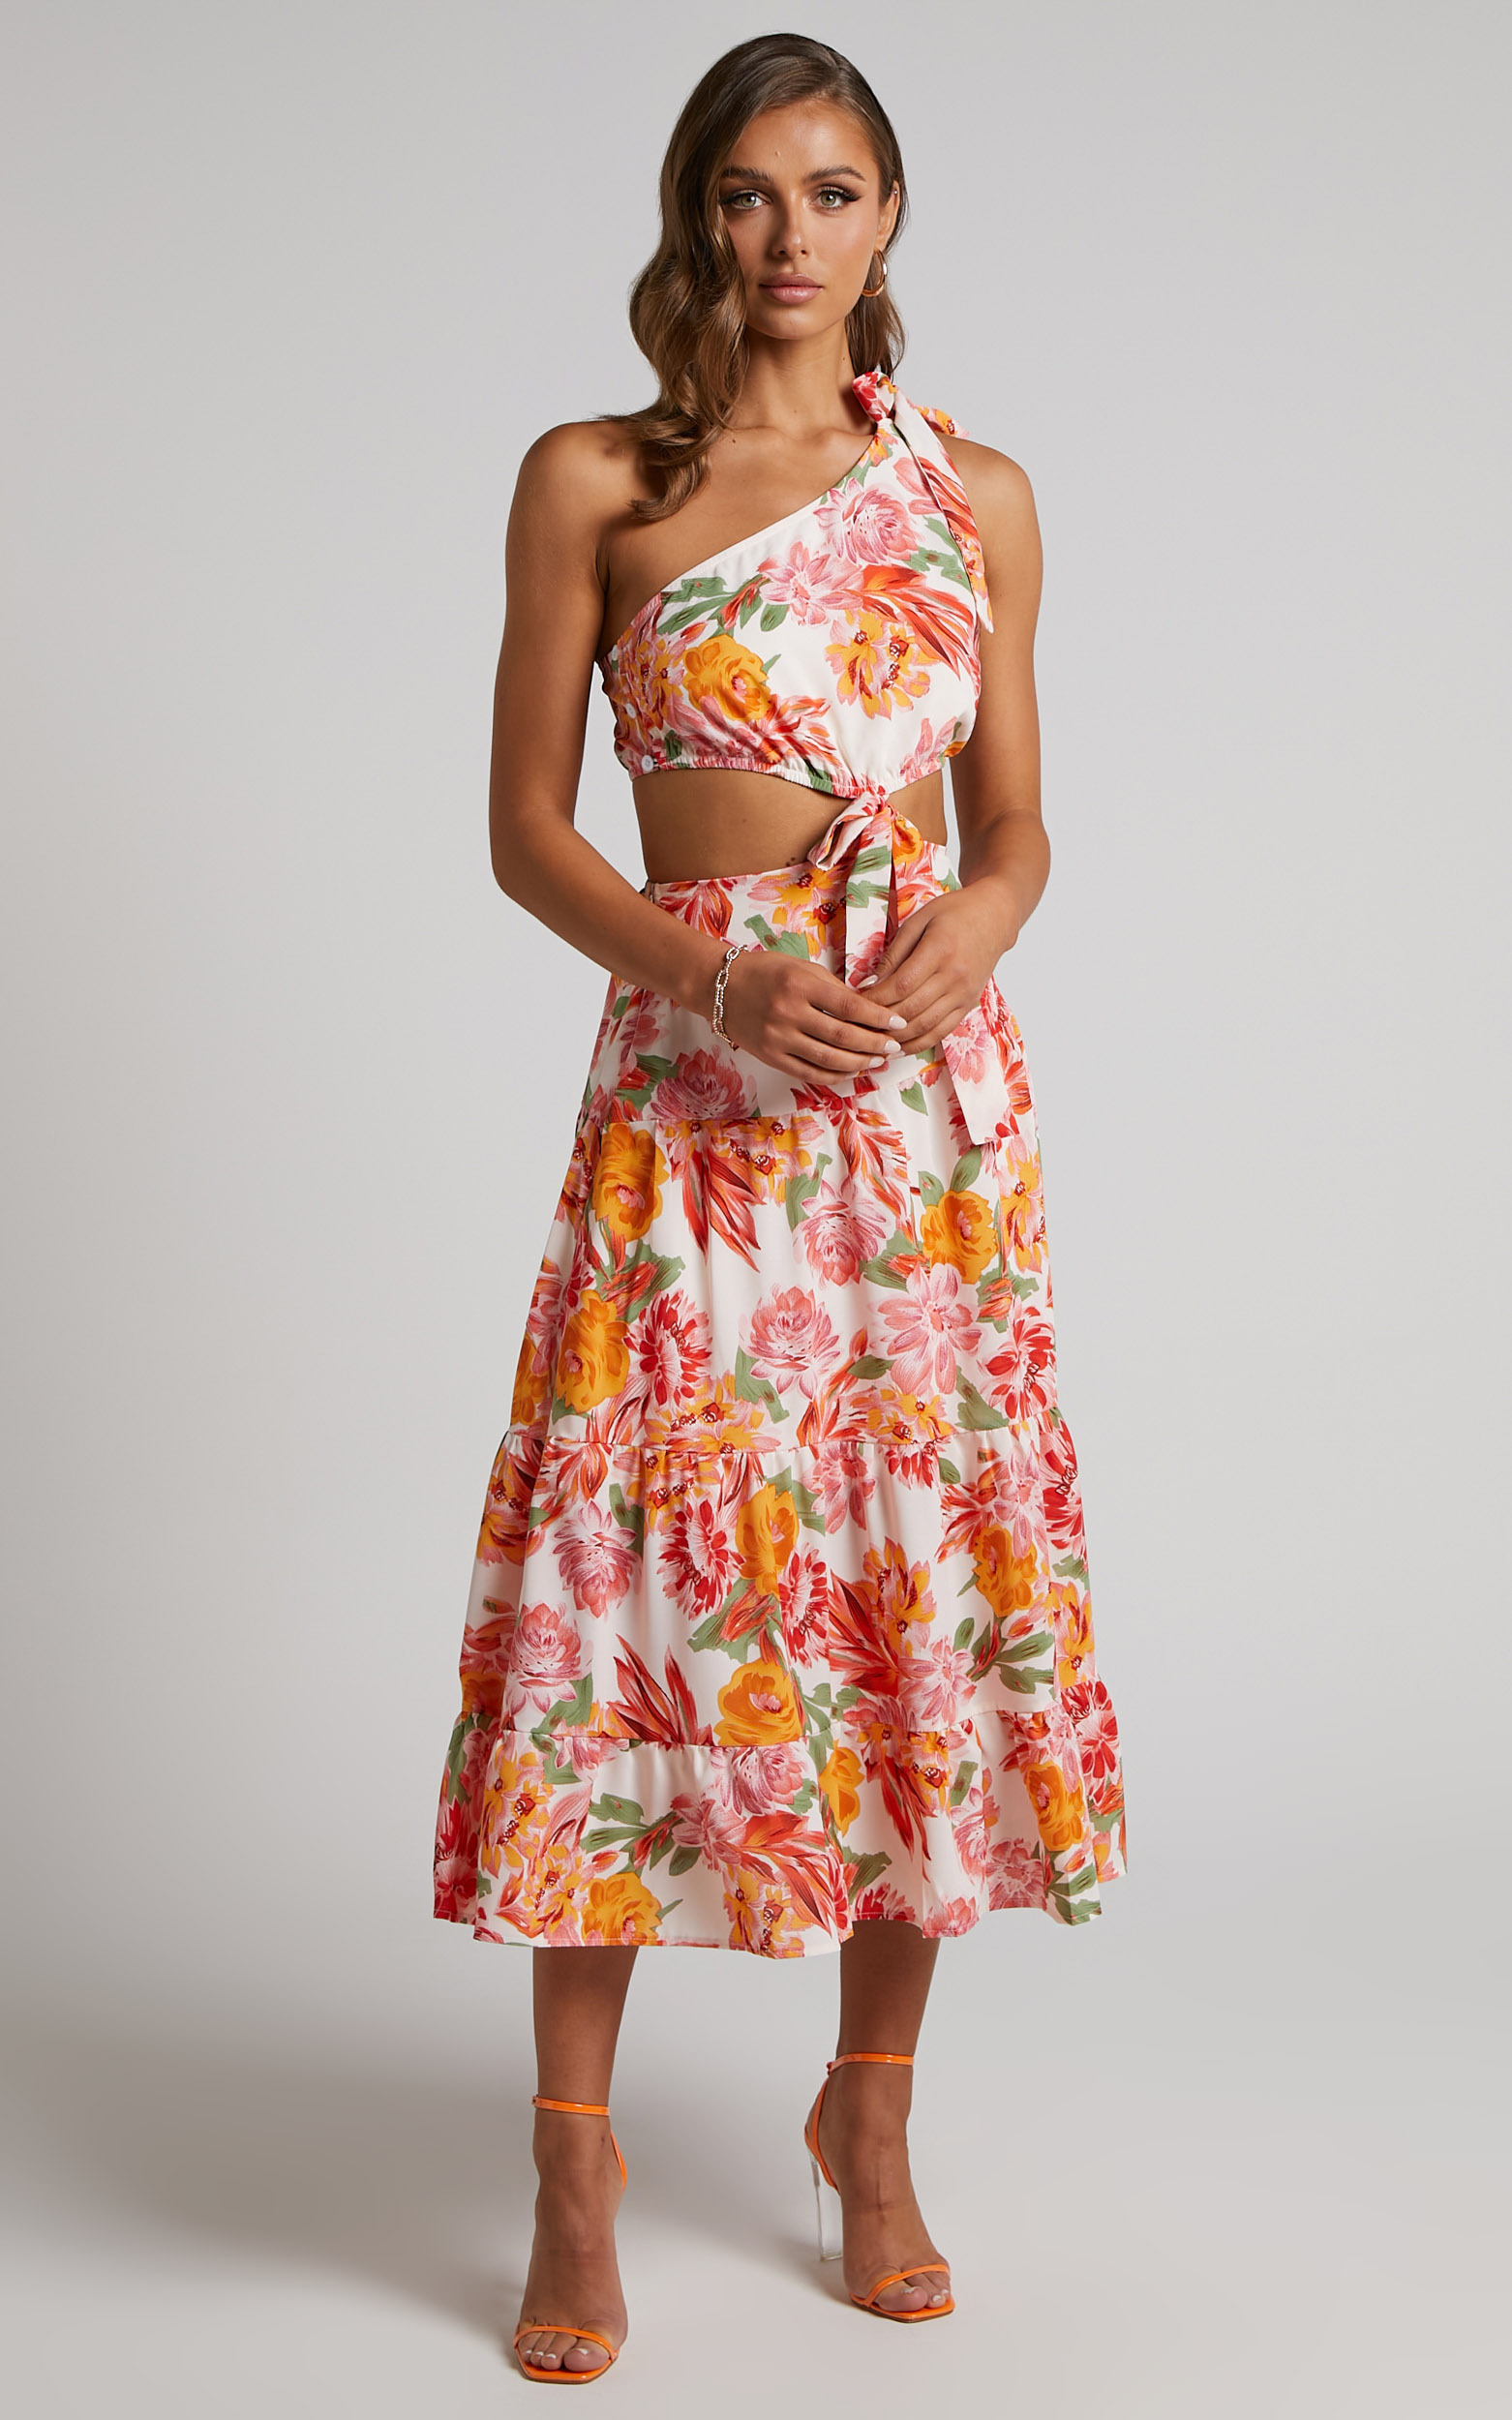 Amabella Maxi Dress - Tie One Shoulder Cut Out Dress in Orange Floral - L, ORG1, hi-res image number null